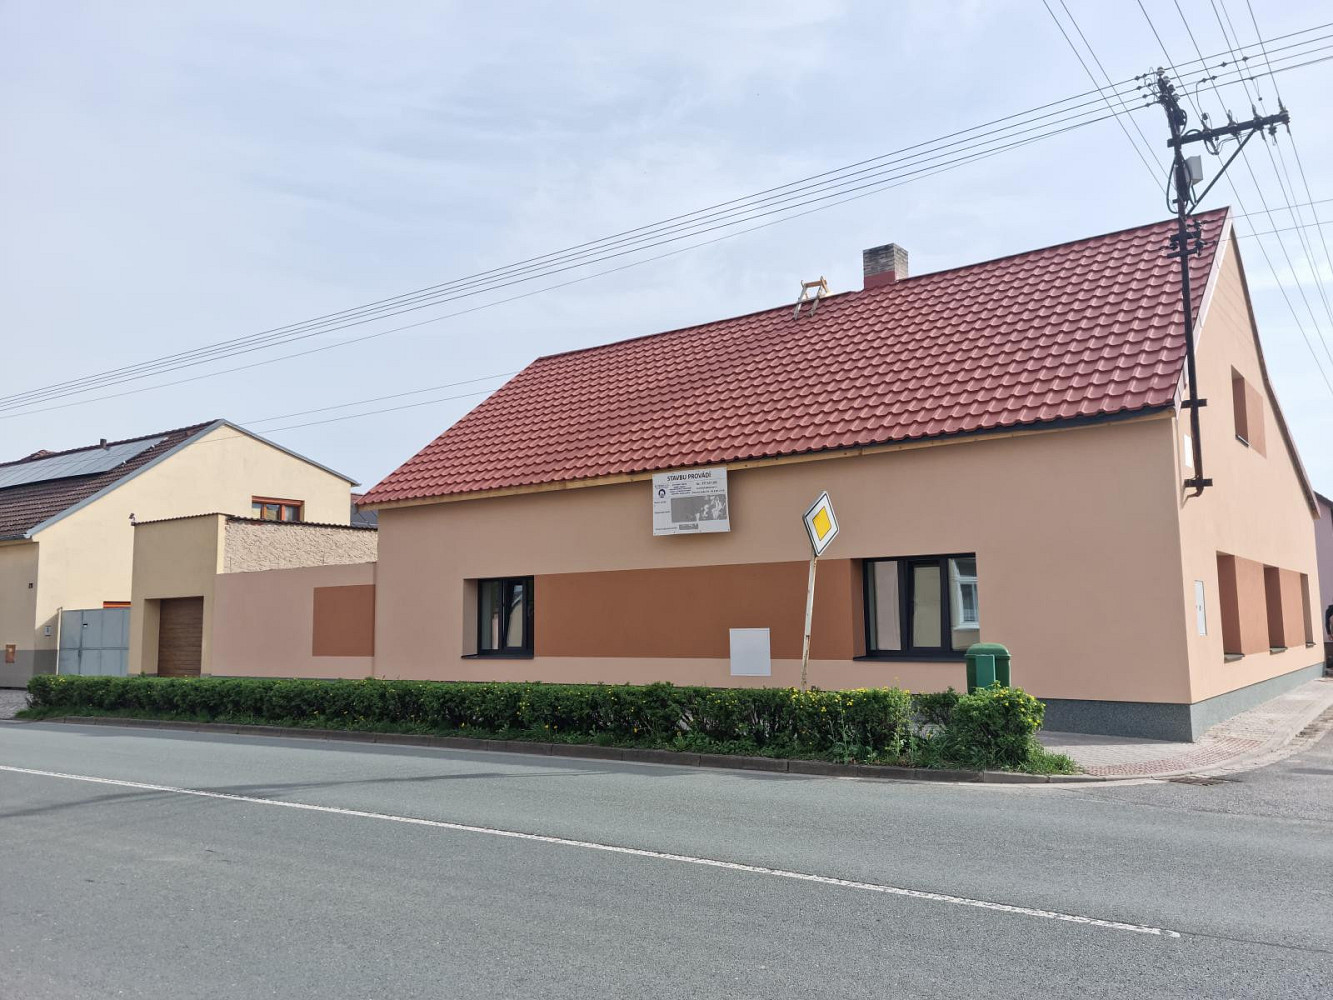 Kolářského, Horní Jelení, okres Pardubice